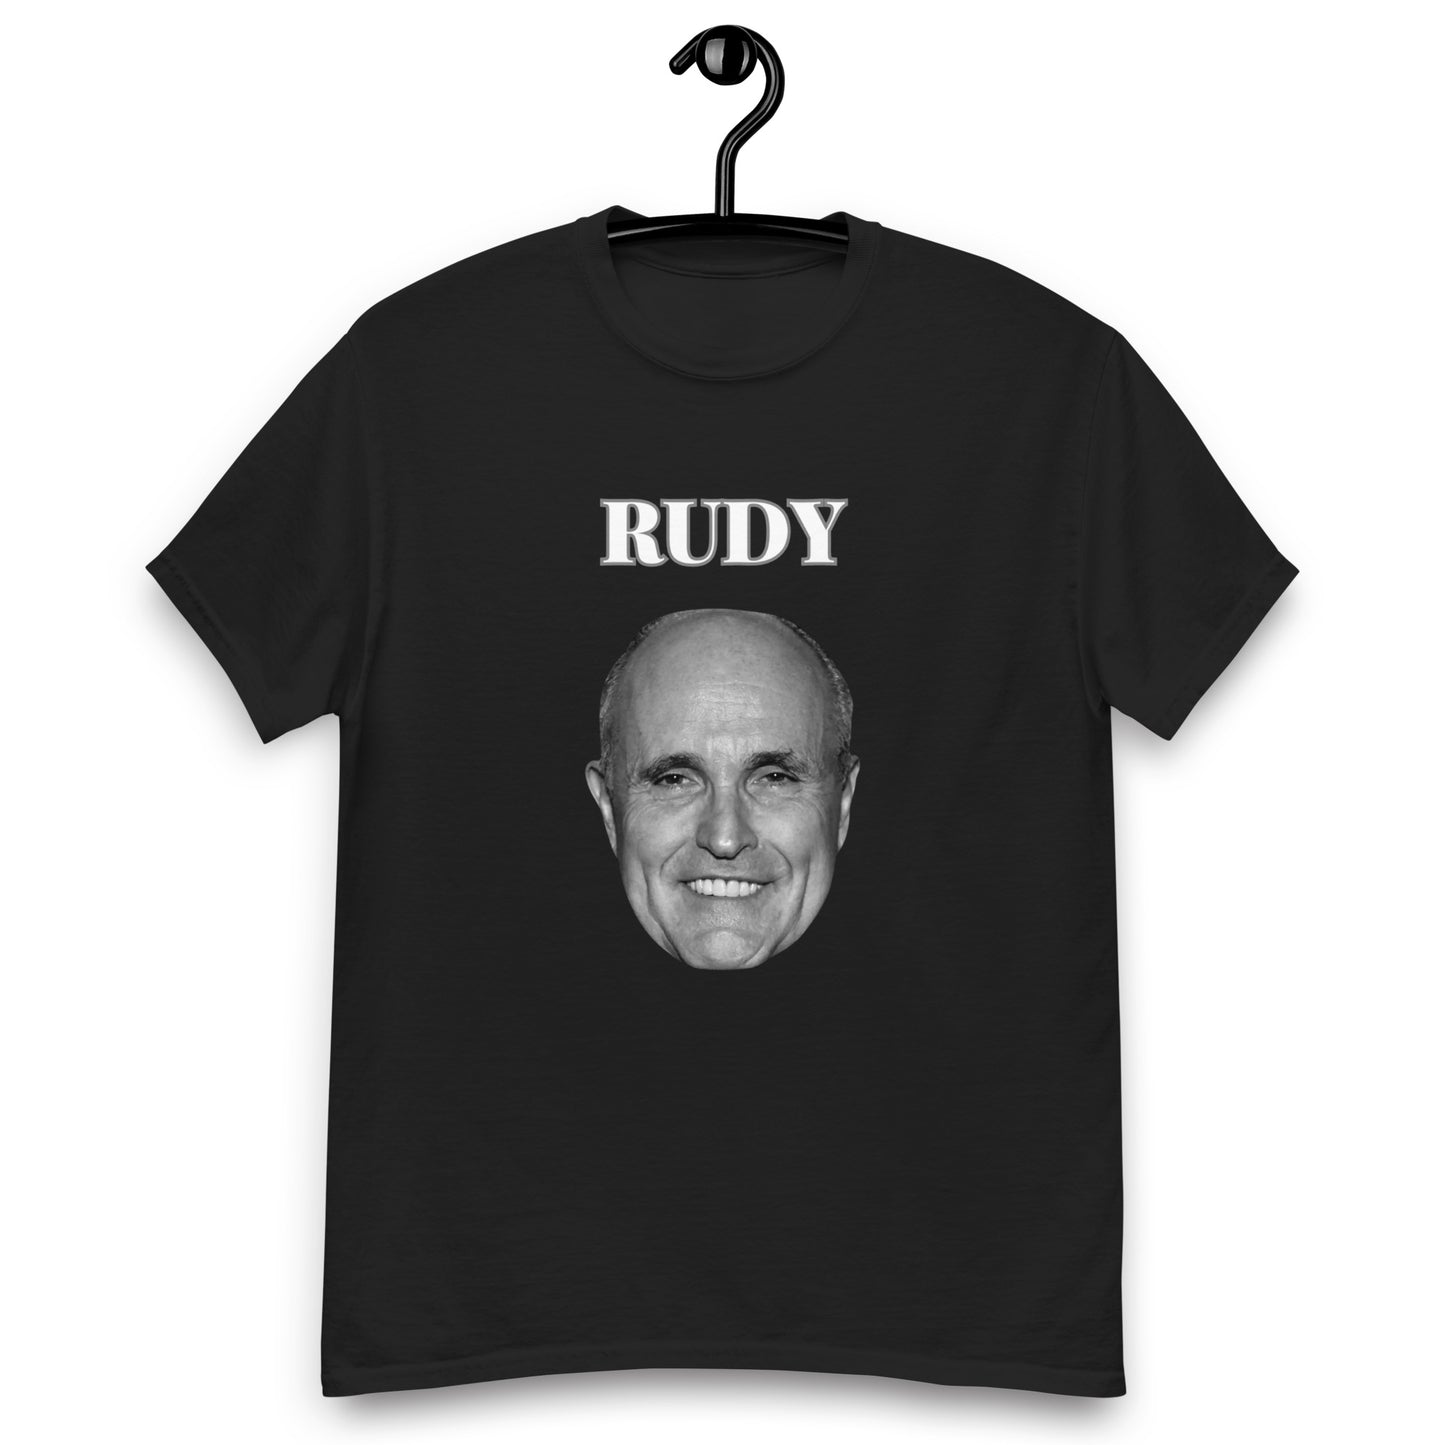 Rudy Men's classic tee